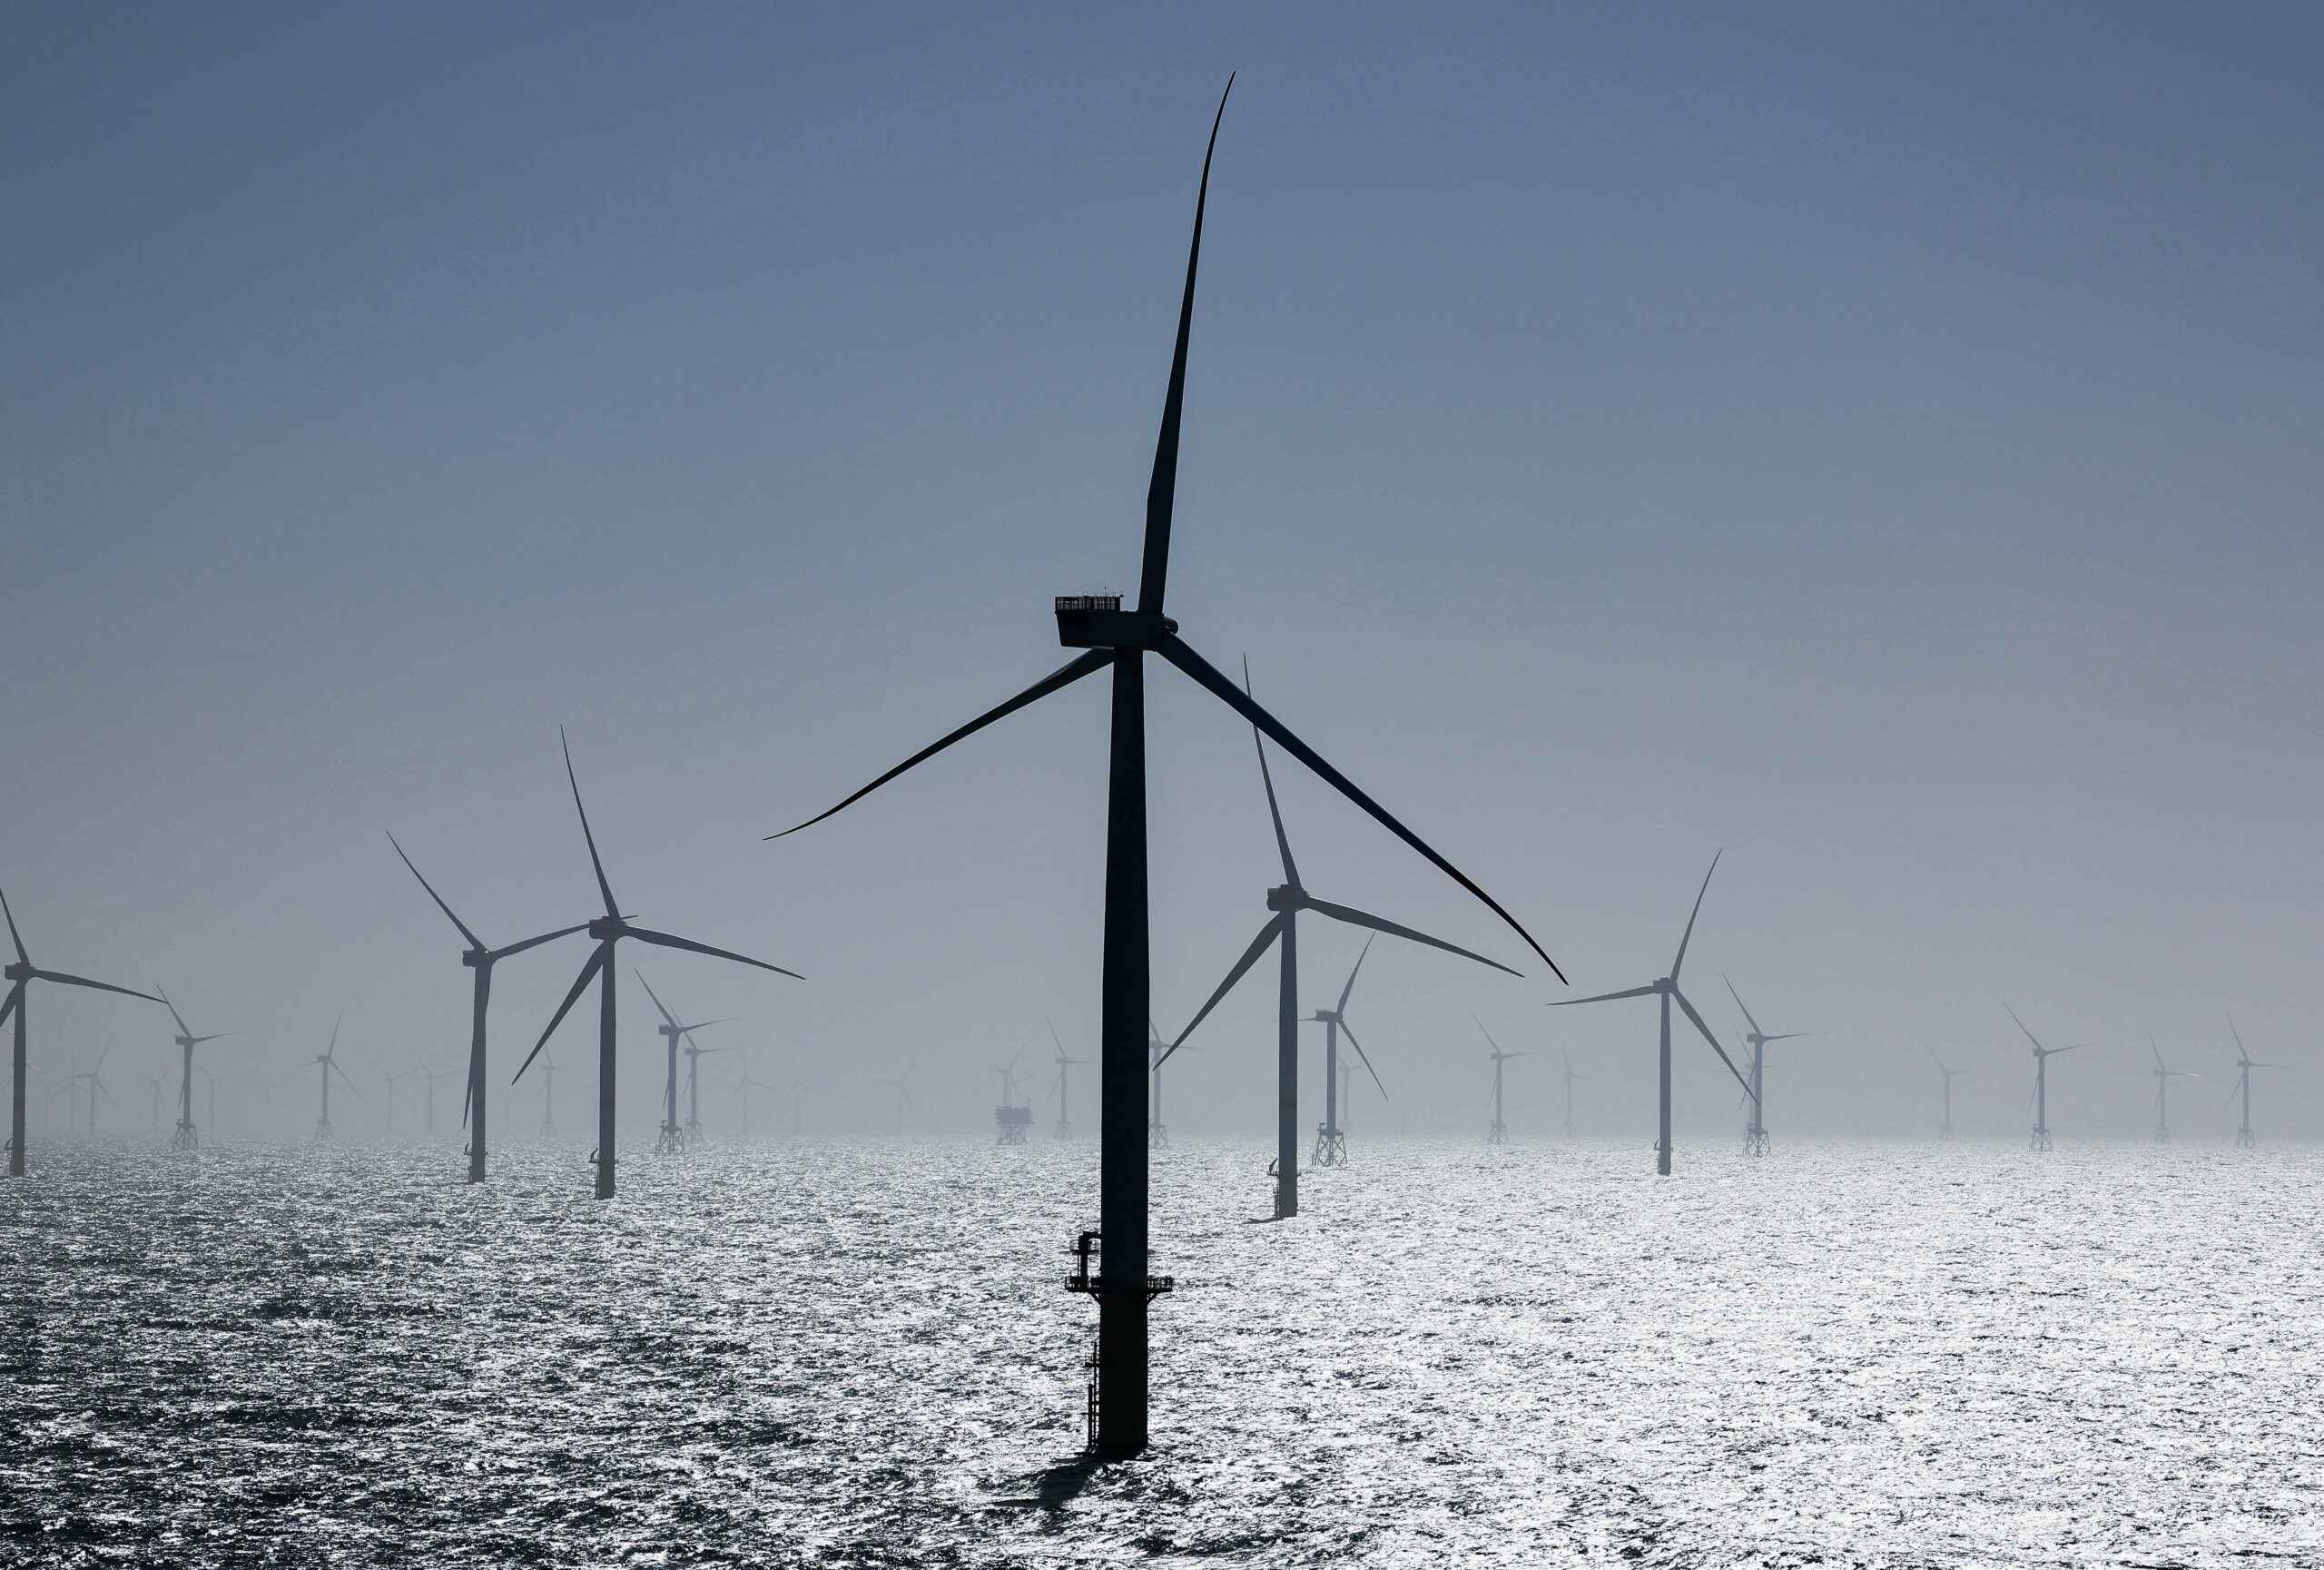 Zahlreiche Windräder, davon einige des neuen RWE-Offshore-Windparks Kaskasi, sind bei der Inbetriebnahme des neuen Windparks rund 35 Kilometer nördlich der Insel Helgoland zu sehen. (Symbolbild)